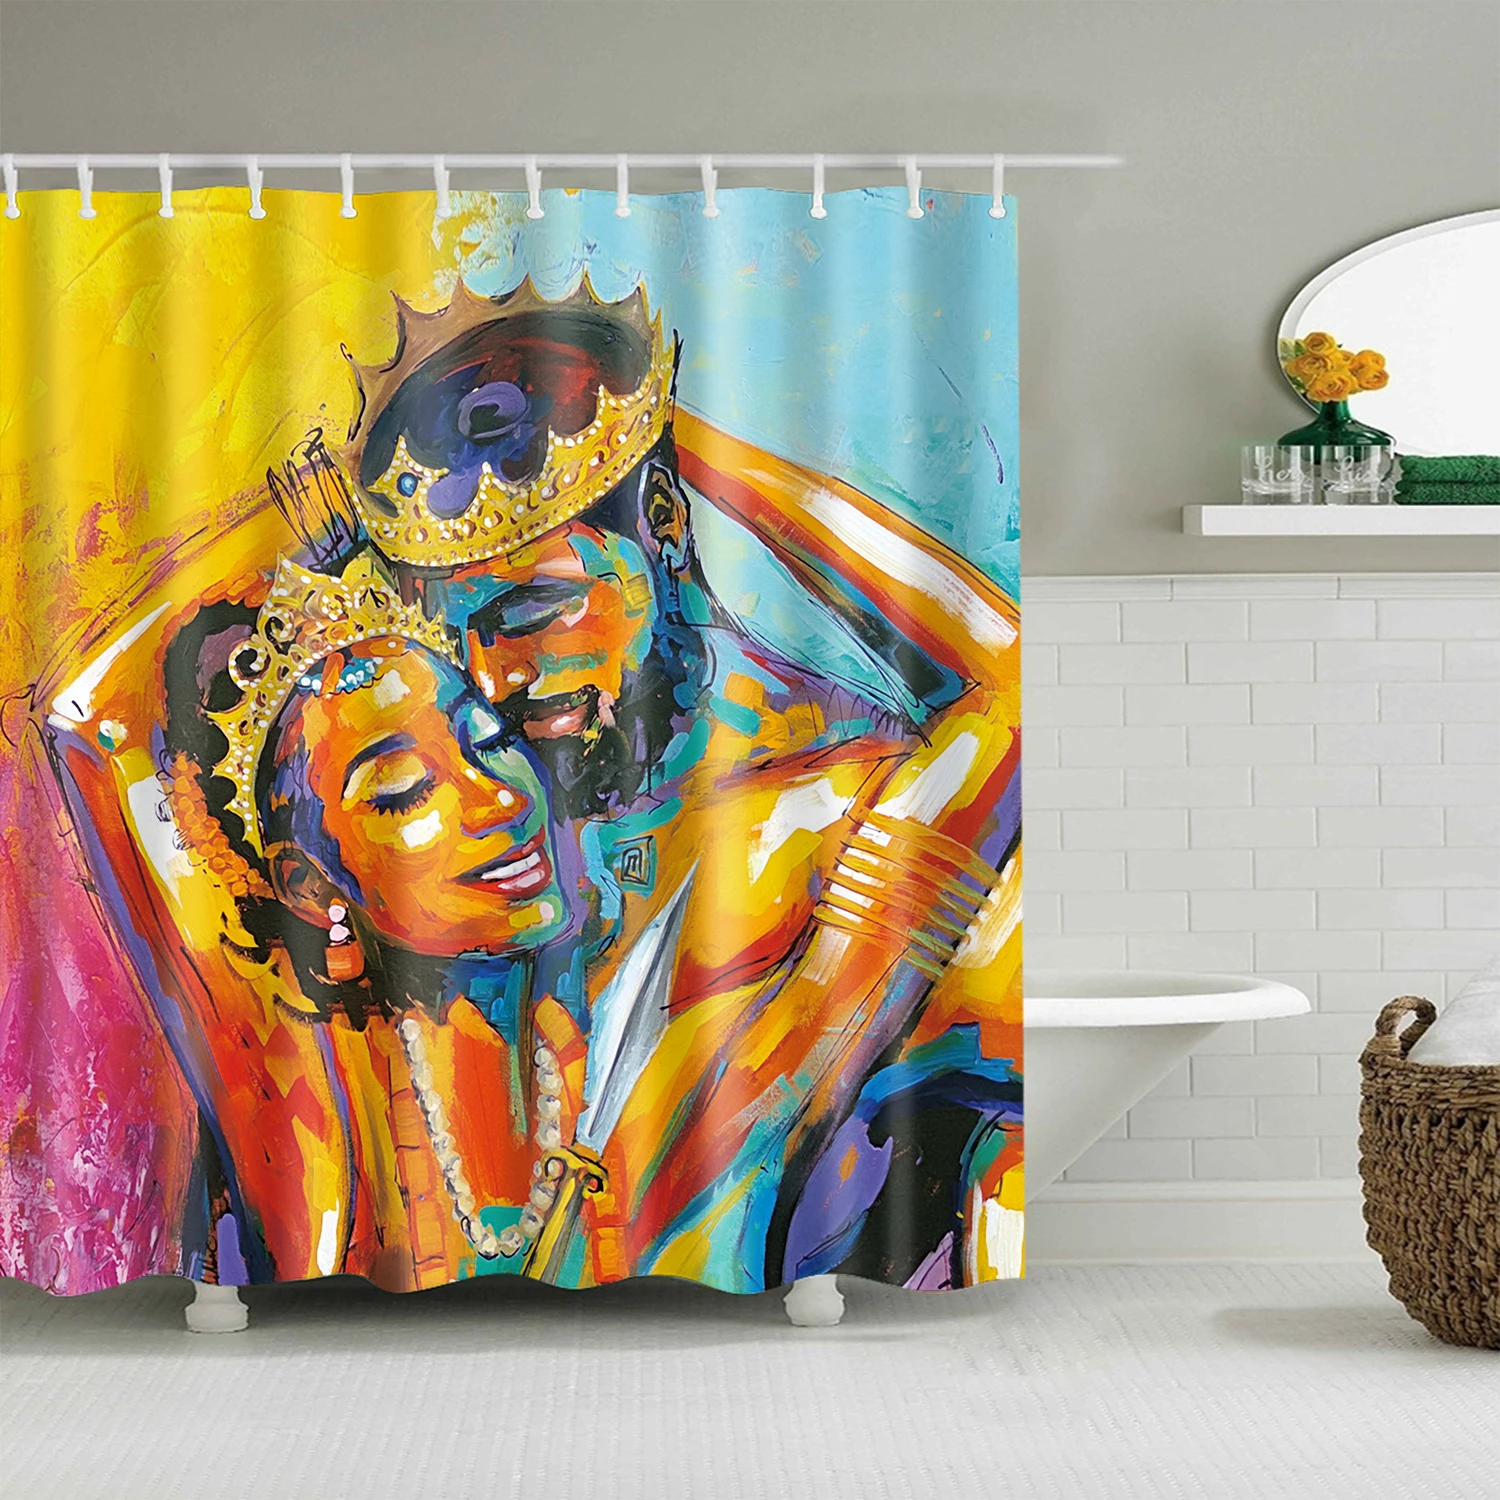 Картина маслом фантазия женщина портрет занавеска для душа s для ванной водонепроницаемый пользовательский ванная комната занавеска ткань для детской ванной Декор